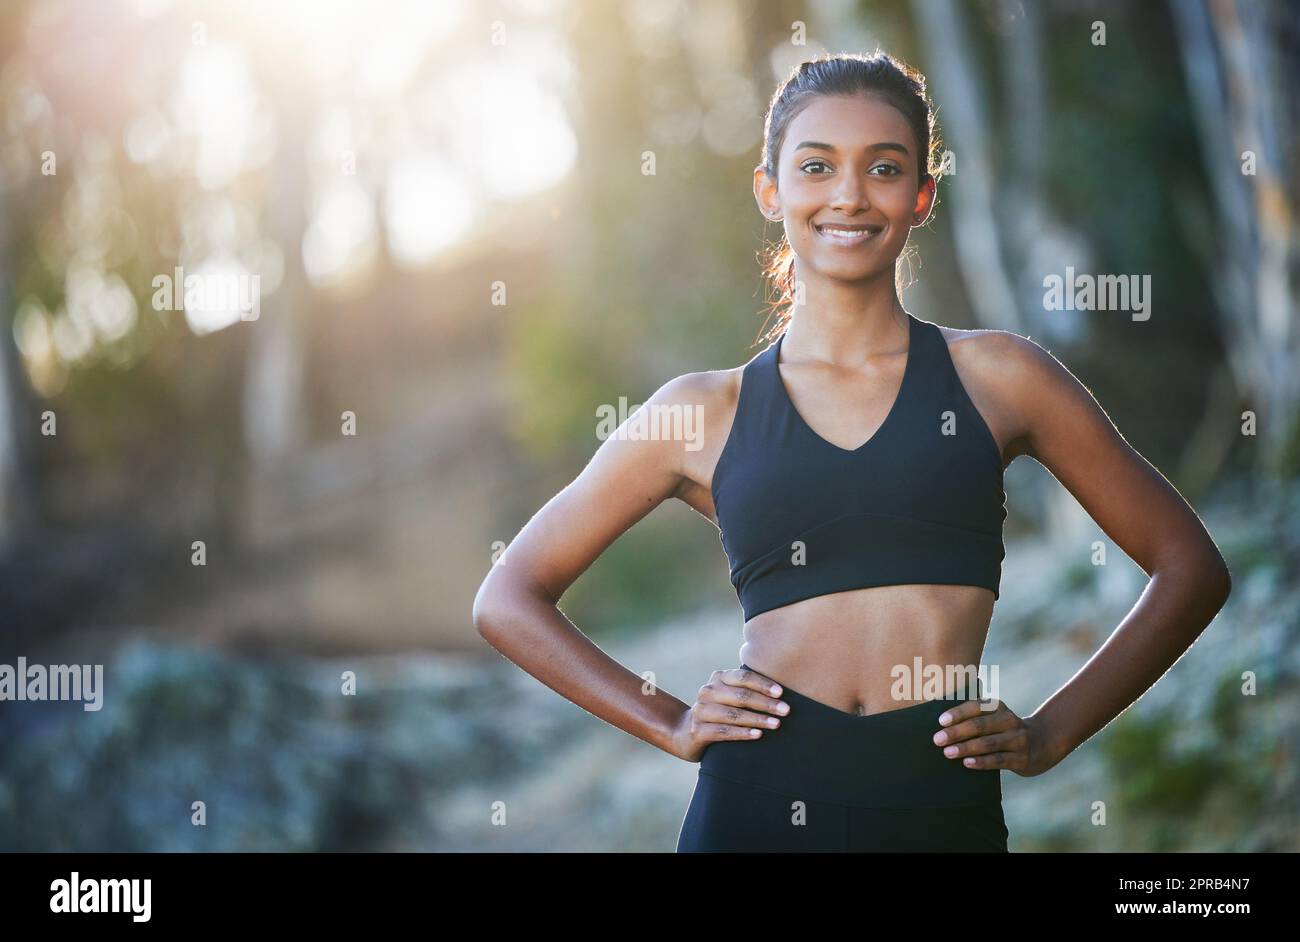 Une course matinale me rafraîchit complètement. Portrait d'une jeune femme sportive qui fait de l'exercice à l'extérieur. Banque D'Images